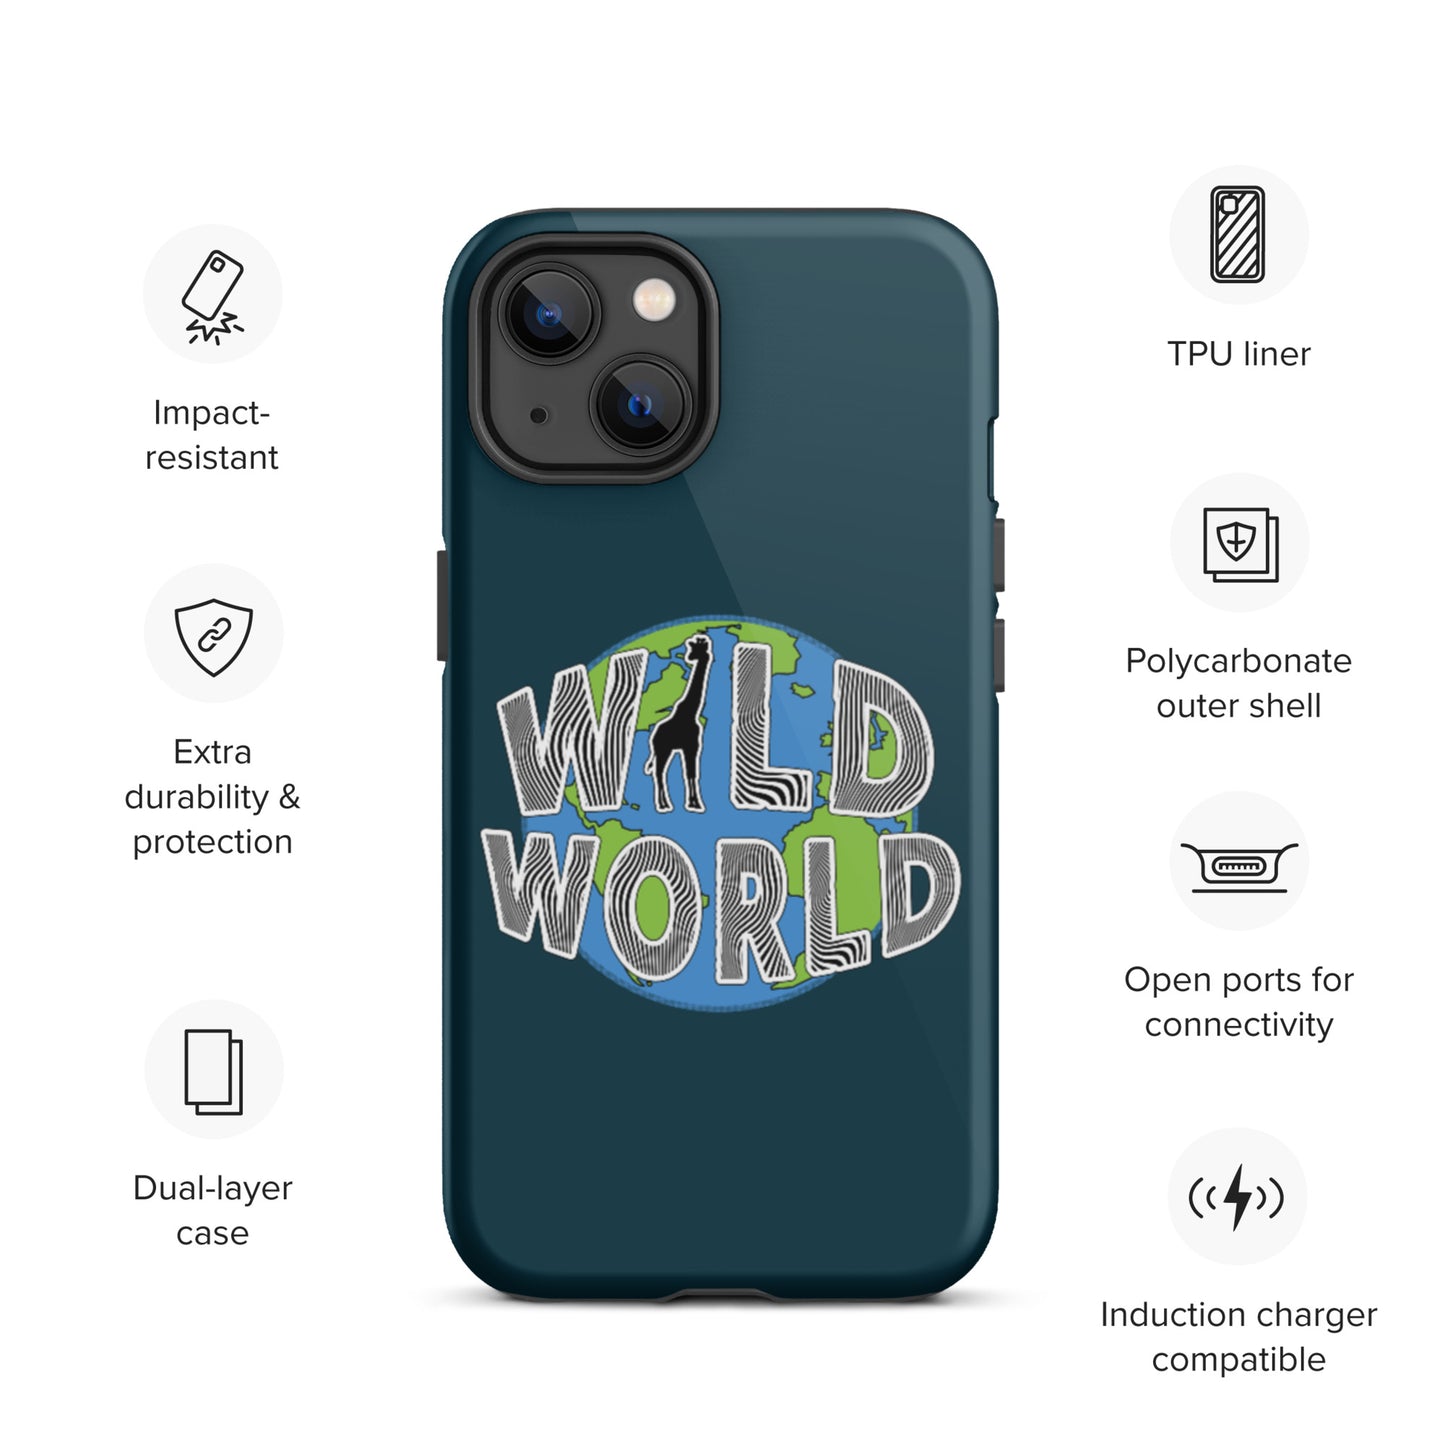 iPhone case - Wild World w Scott Solomon